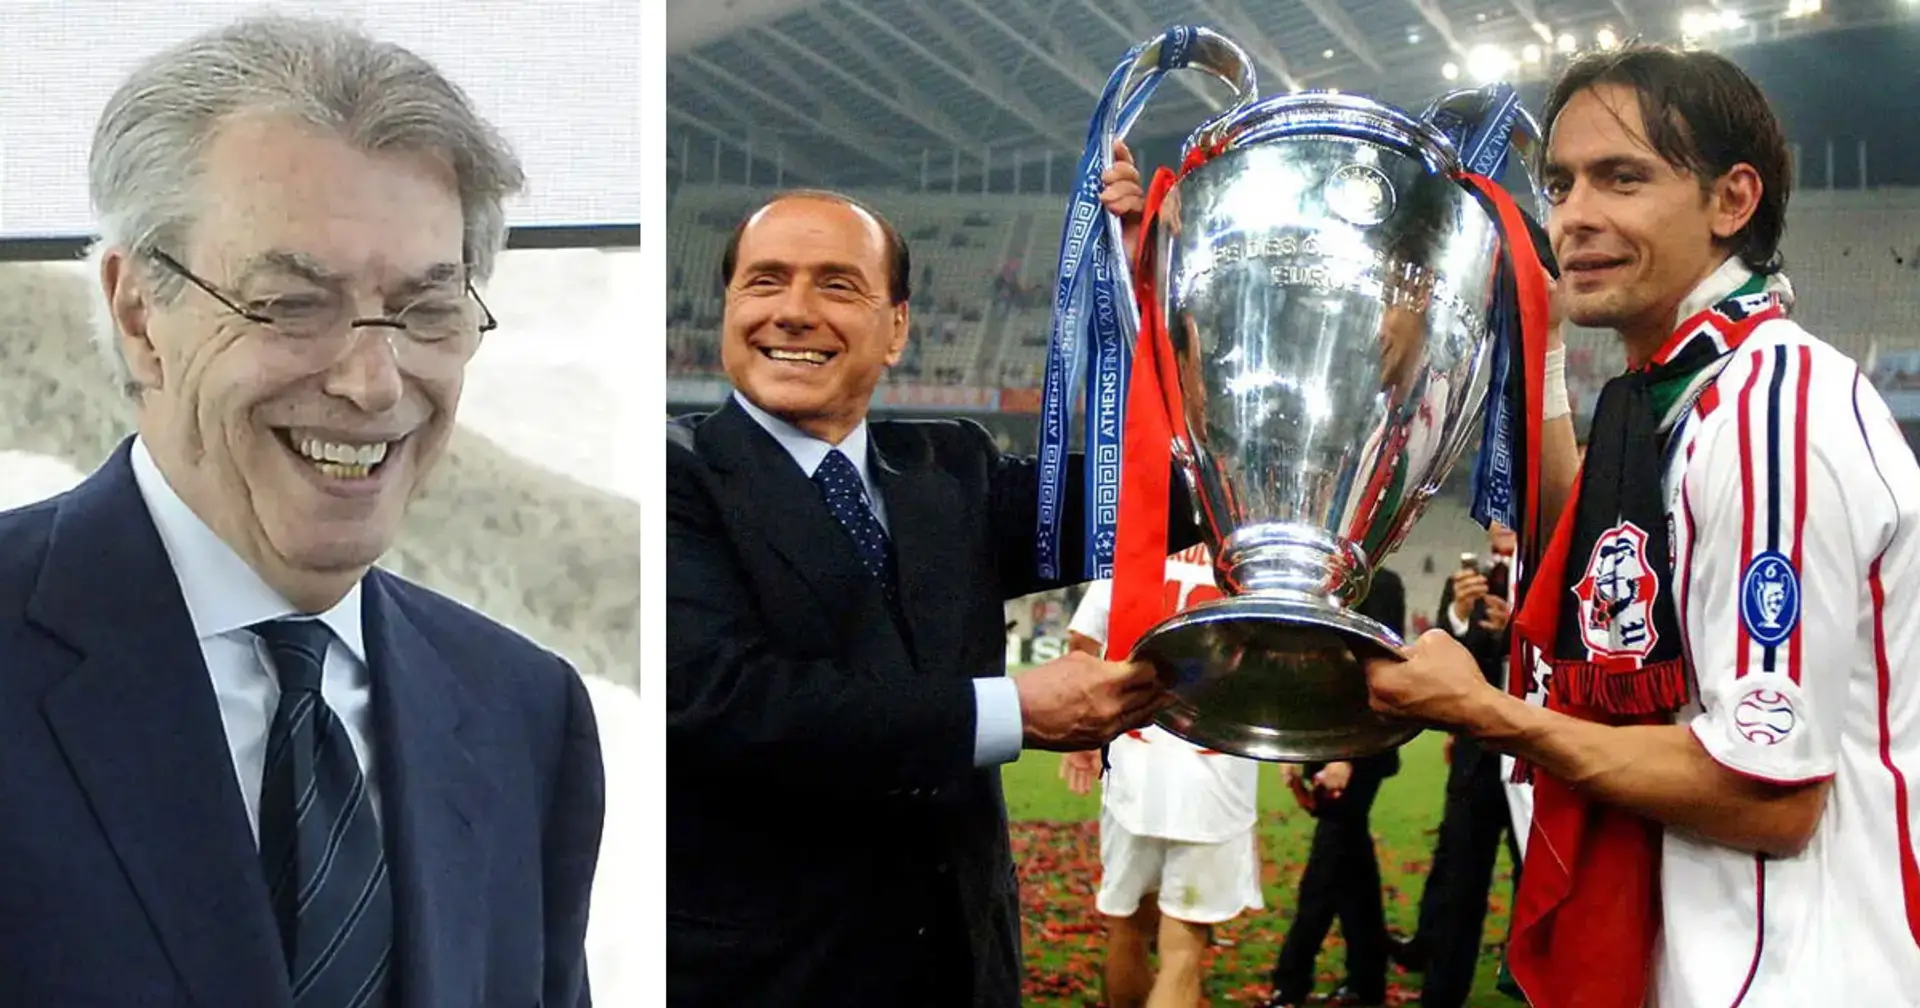 "Come non stimarlo?": Moratti svela un retroscena sul rapporto con Berlusconi ai tempi del Milan